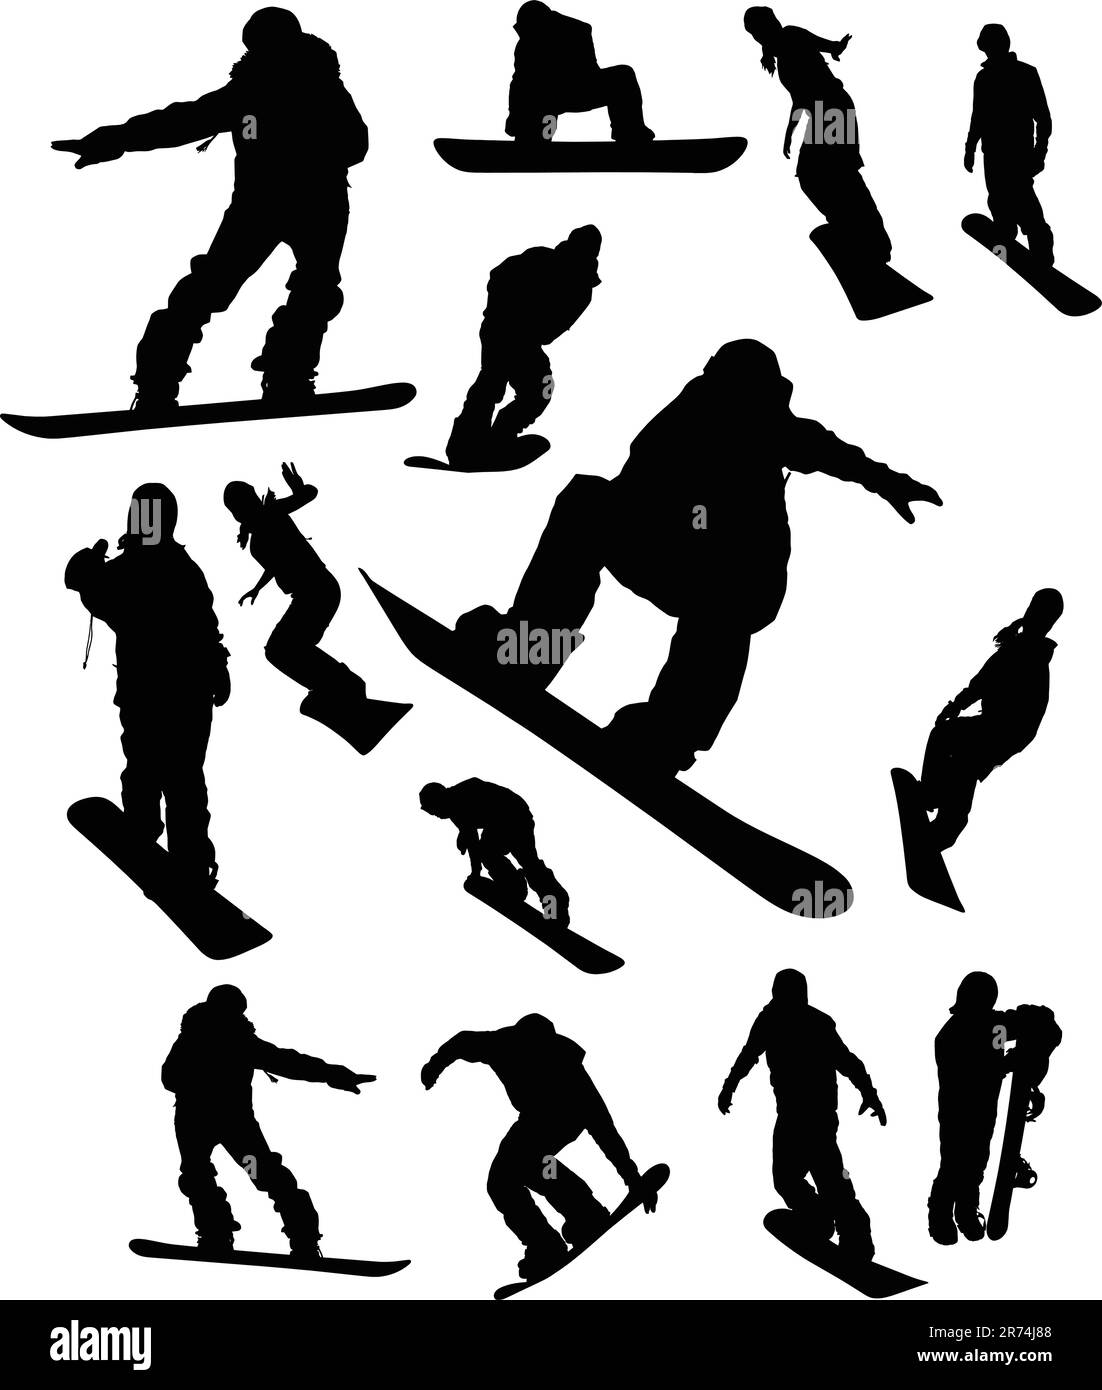 Snowboarder Mann Silhouette set für die Gestaltung Stock Vektor